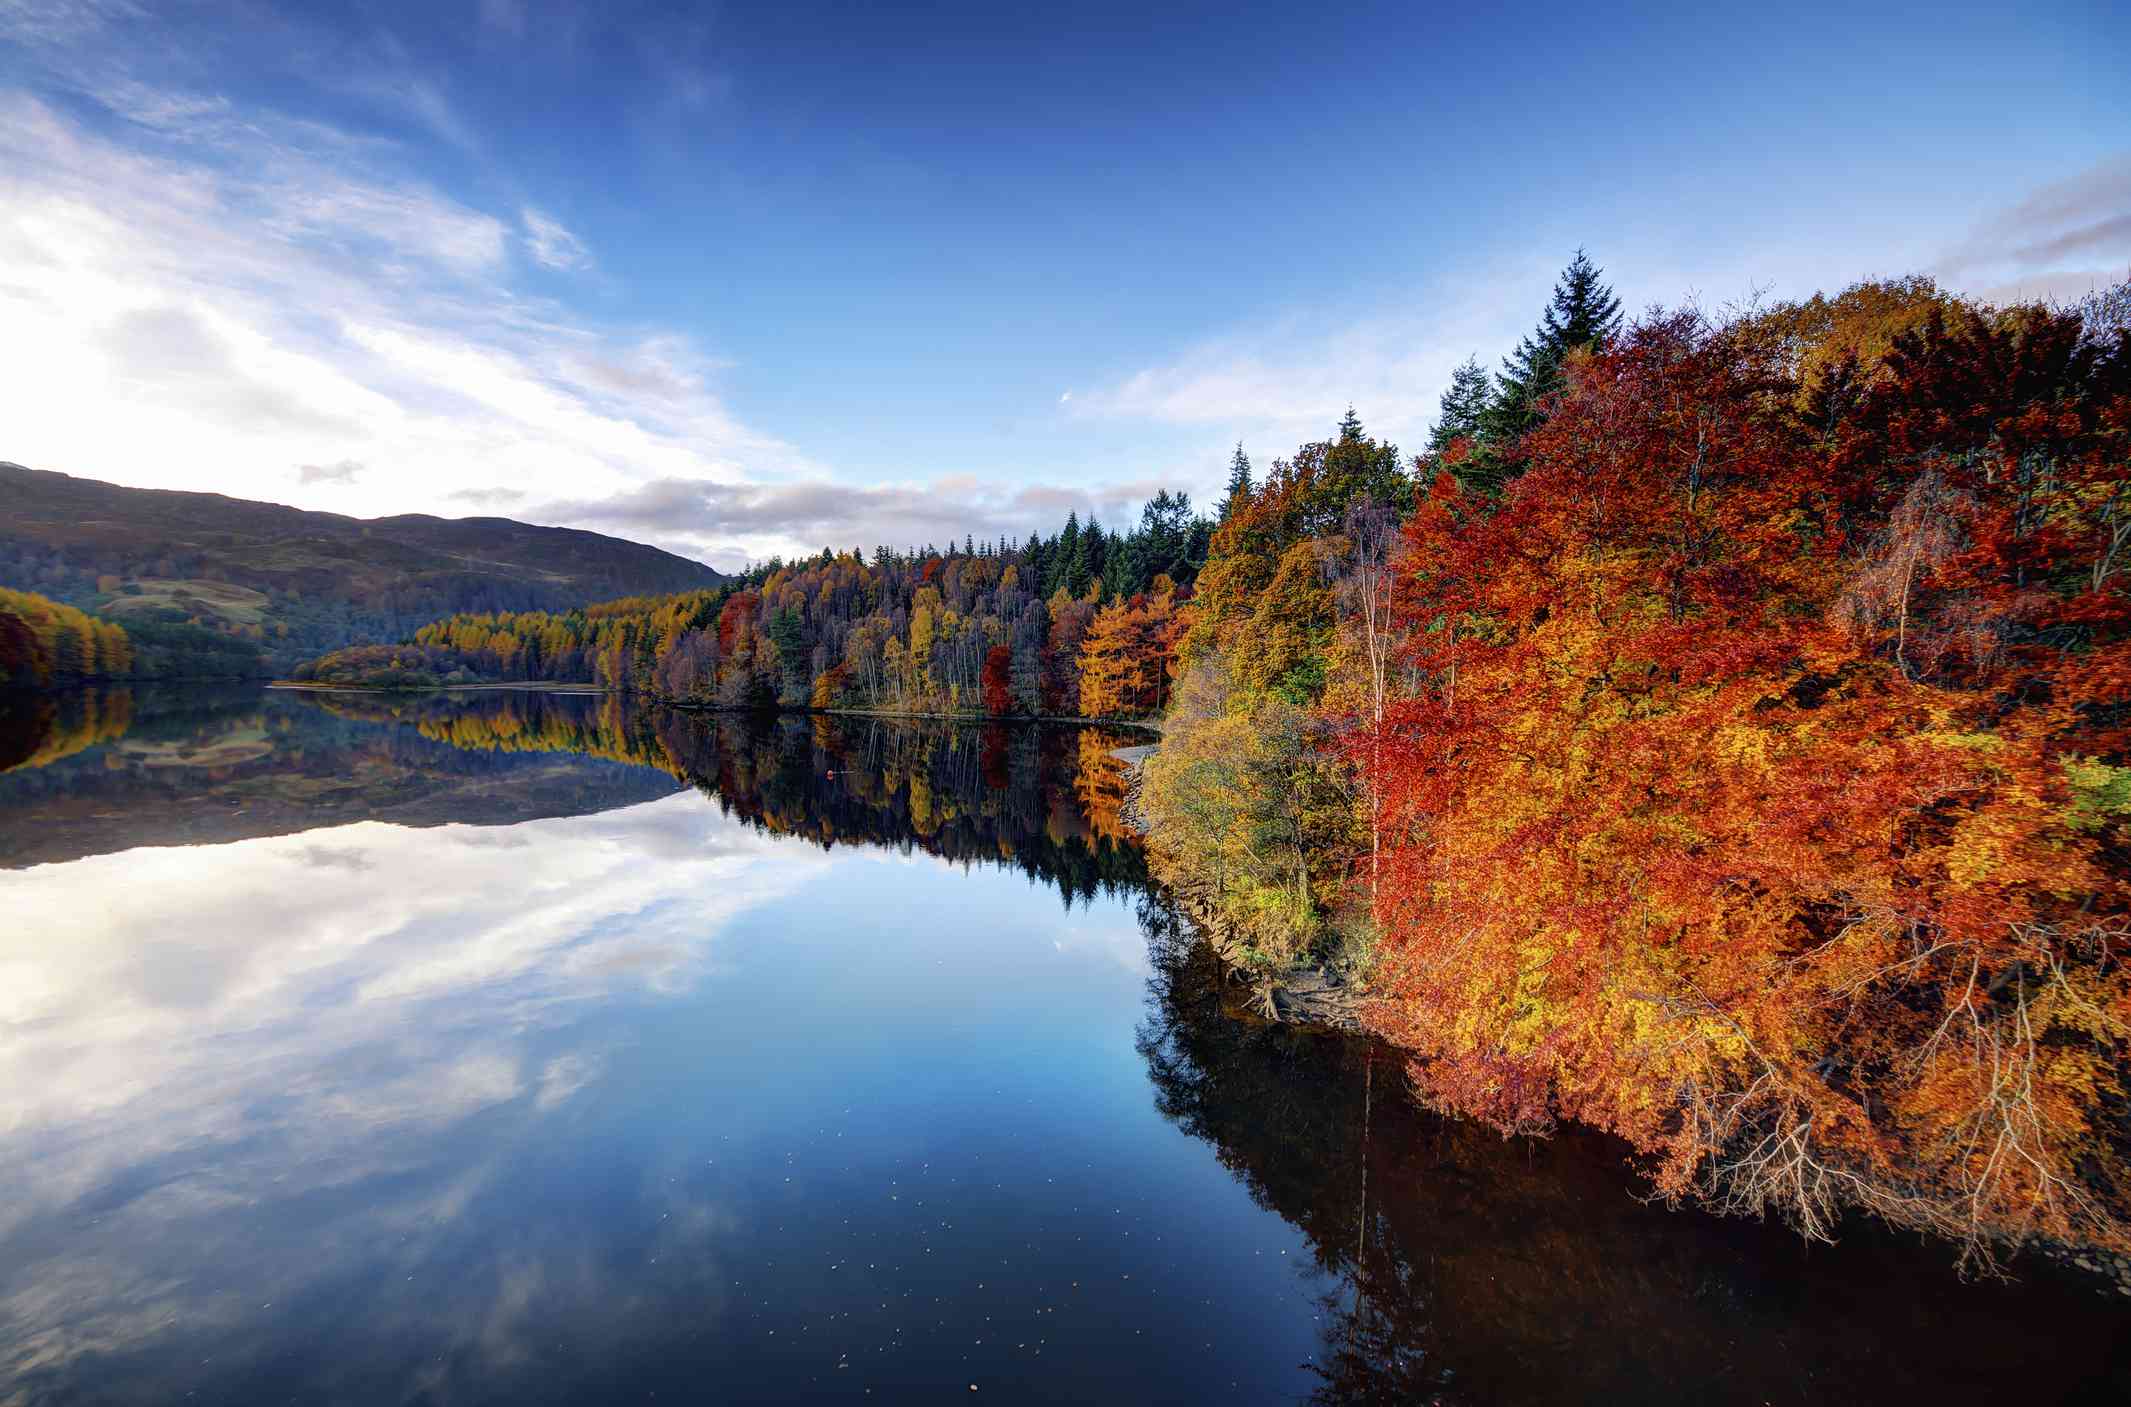 法斯卡利湖的景色，秋天的树木排成红色、金色和绿色的阴影，蓝天和湖面上的白云倒映在湖面上